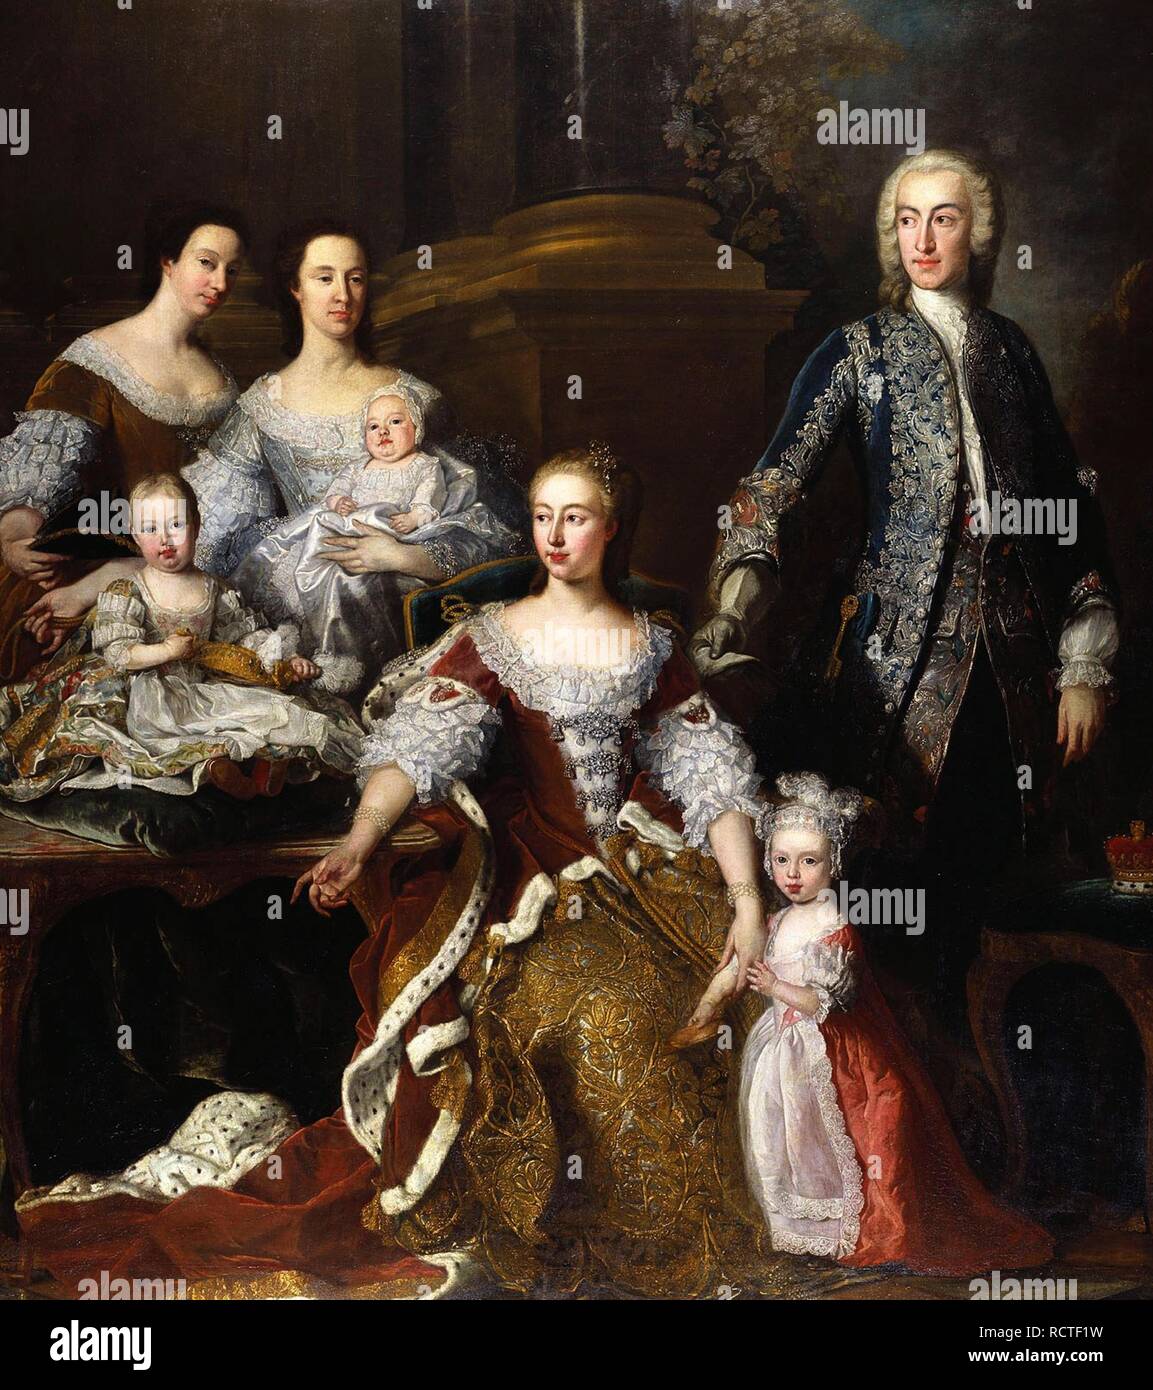 Augusta de Sax-Gotha, Princesa de Gales, con miembros de su familia y hogar. Museo: colección real, Londres. Autor: Loo, JEAN BAPTISTE VAN. Foto de stock